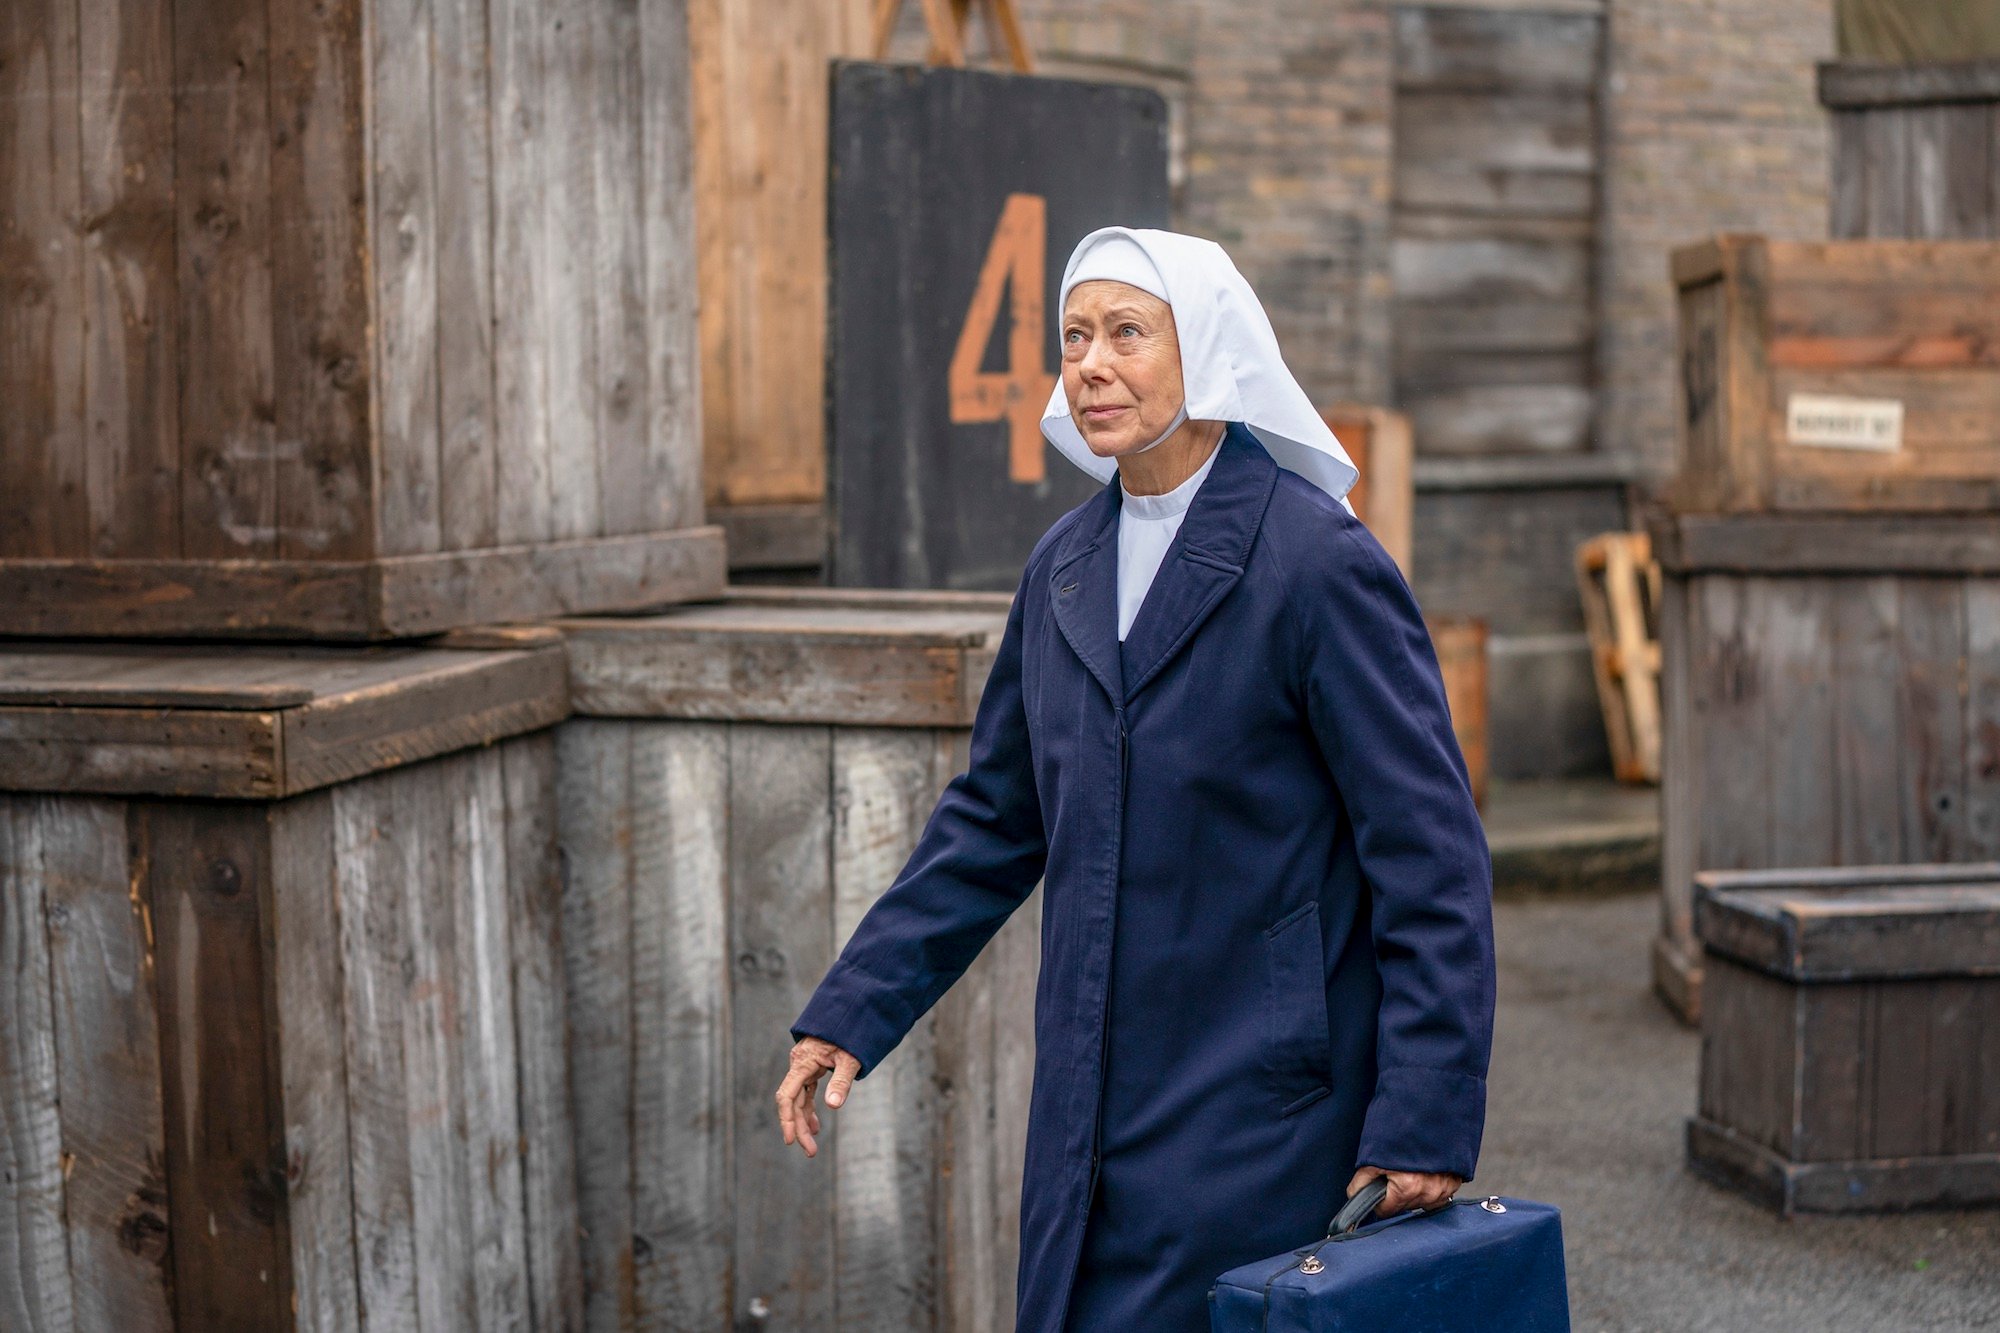 nun carrying medical bag 